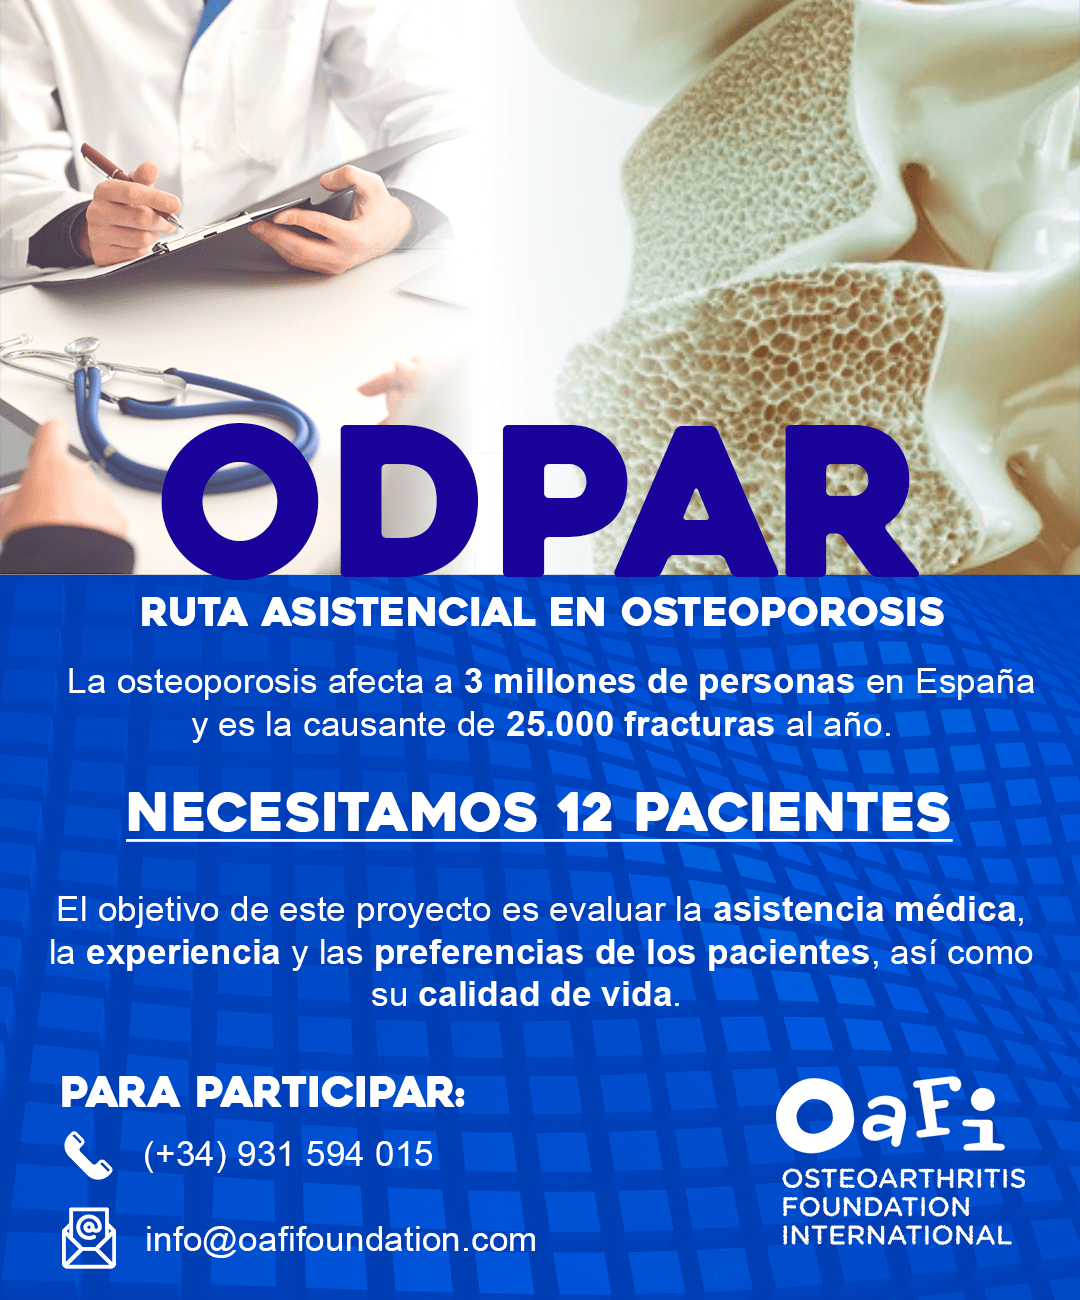 OAFI necesita 12 pacientes que sufran de osteoporosis para un proyecto sobre asistencia médica y calidad de vida